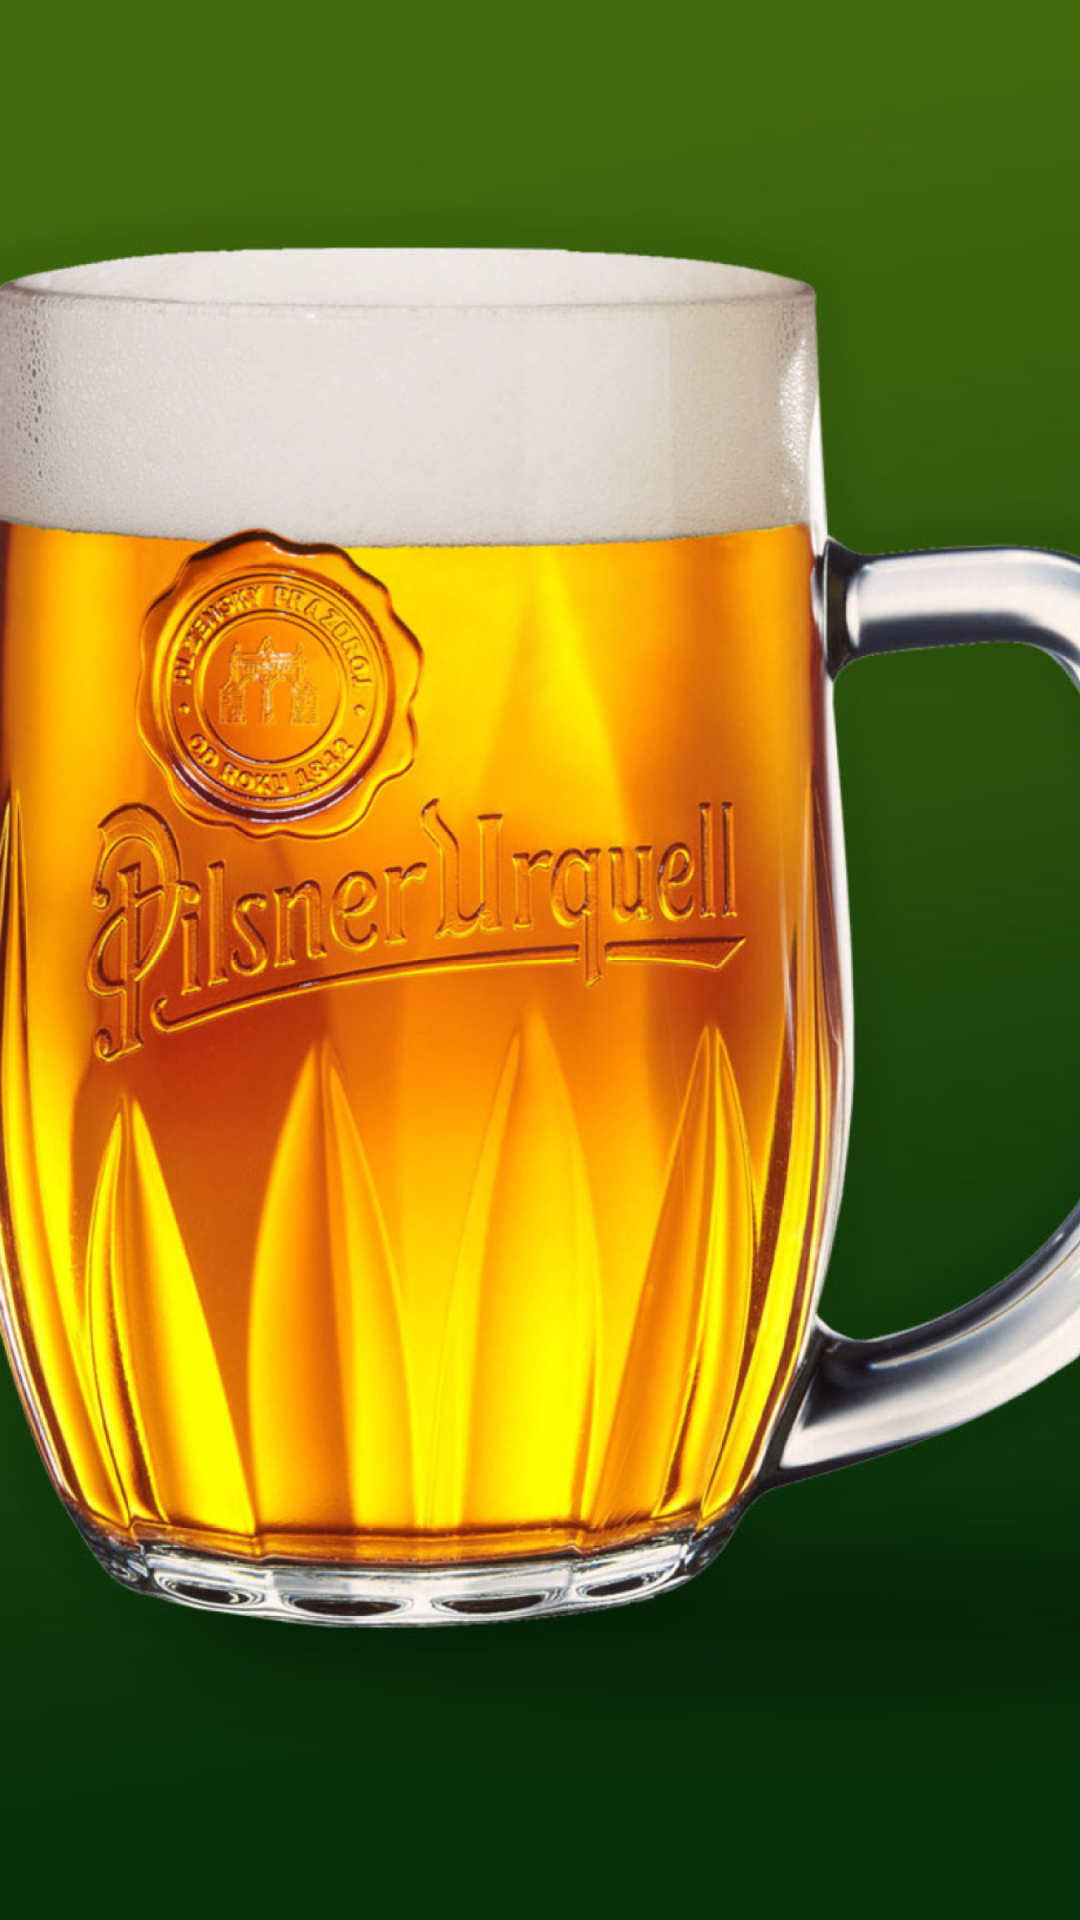 Sfondi Czech Original Beer - Pilsner Urquell 1080x1920